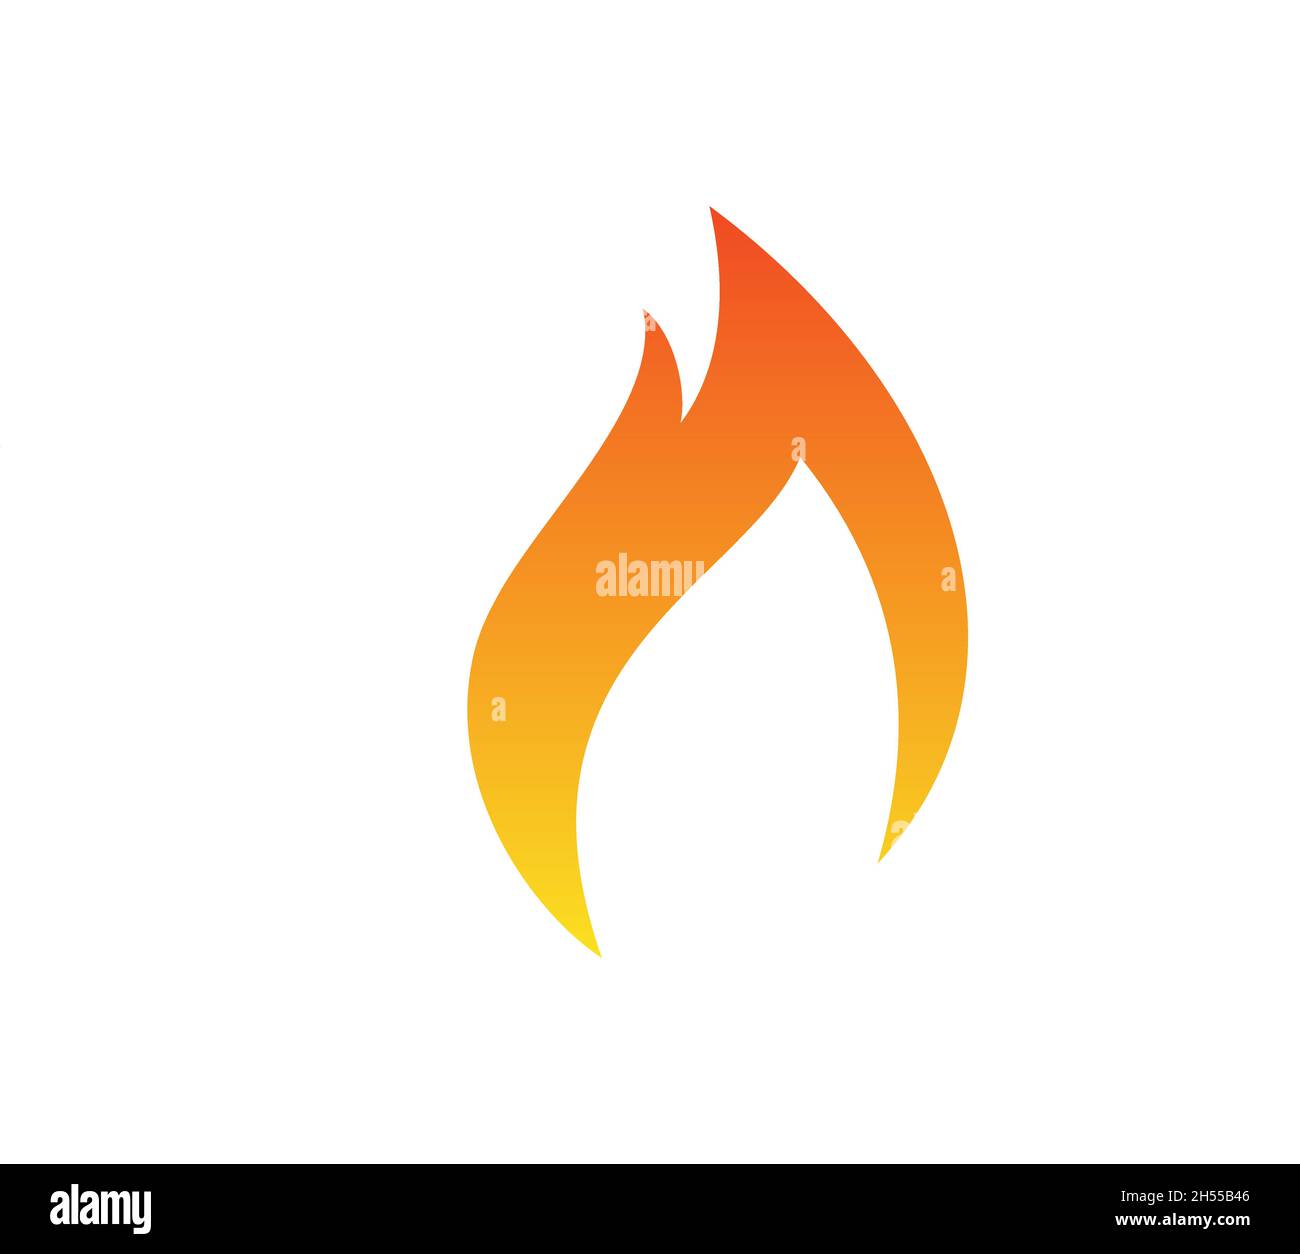 Modello di disegno con disegno vettoriale a fiamma e logo del fuoco. Vettore eps 10. Illustrazione Vettoriale